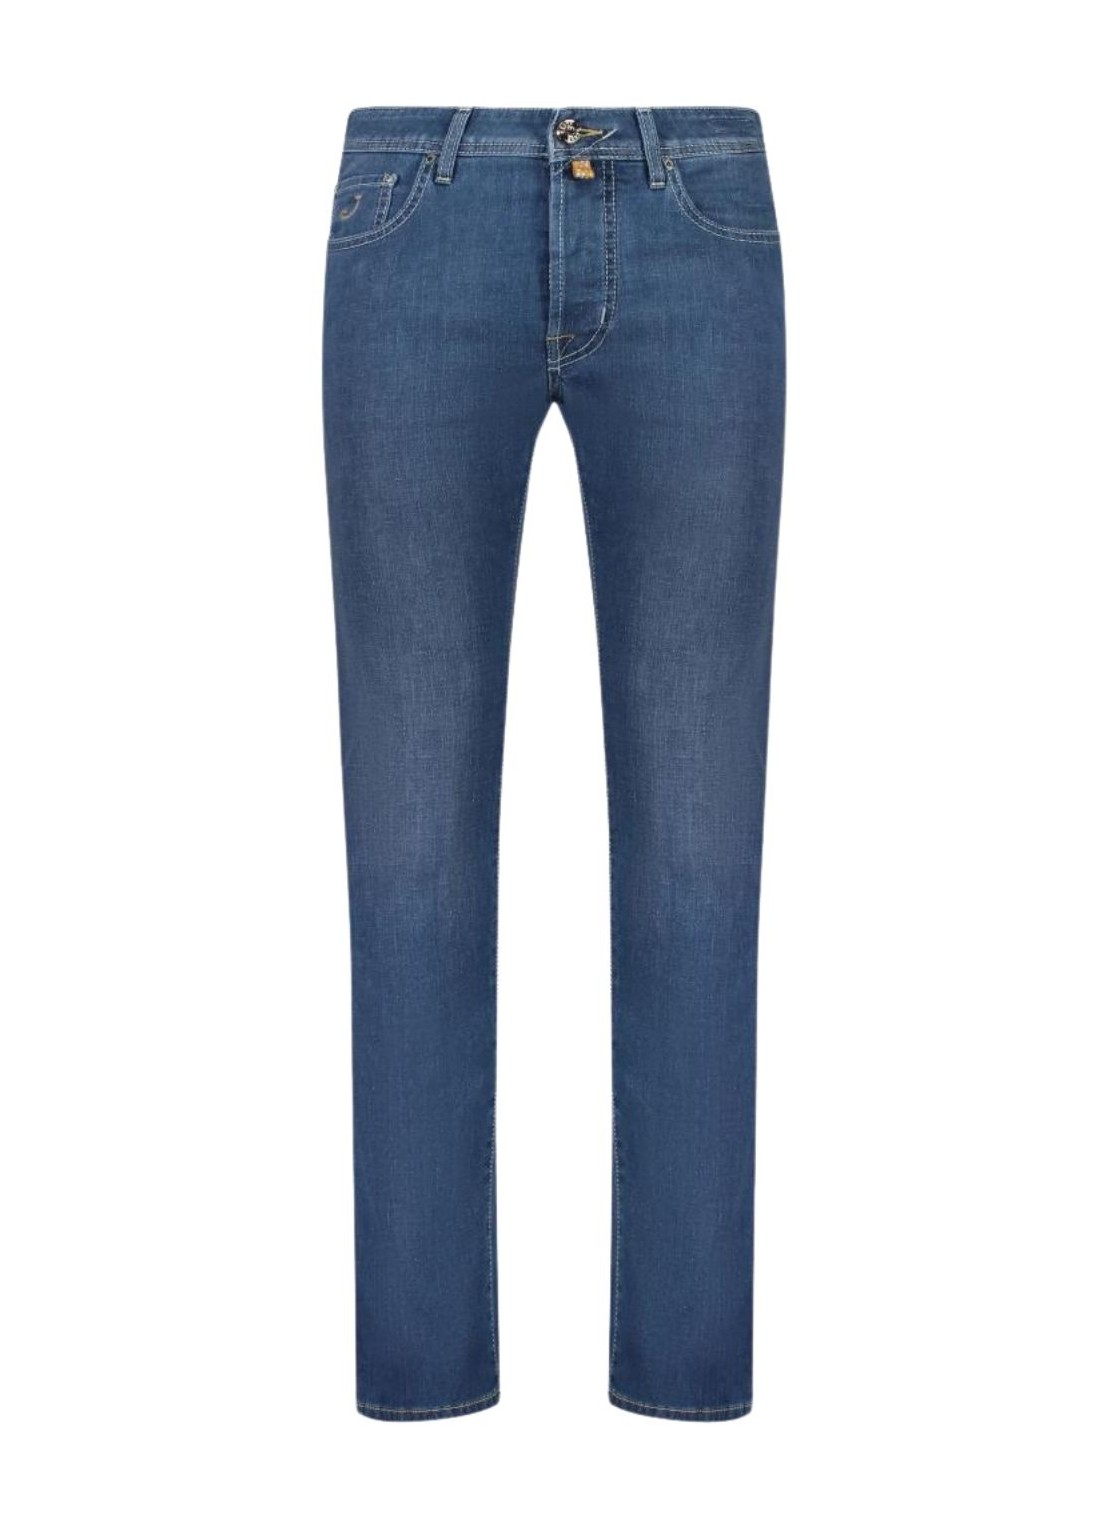 Pantalon jeans jacob cohen denim manpant 5 pkt slim fit bard - uqm0440s4130 676d talla 35
 